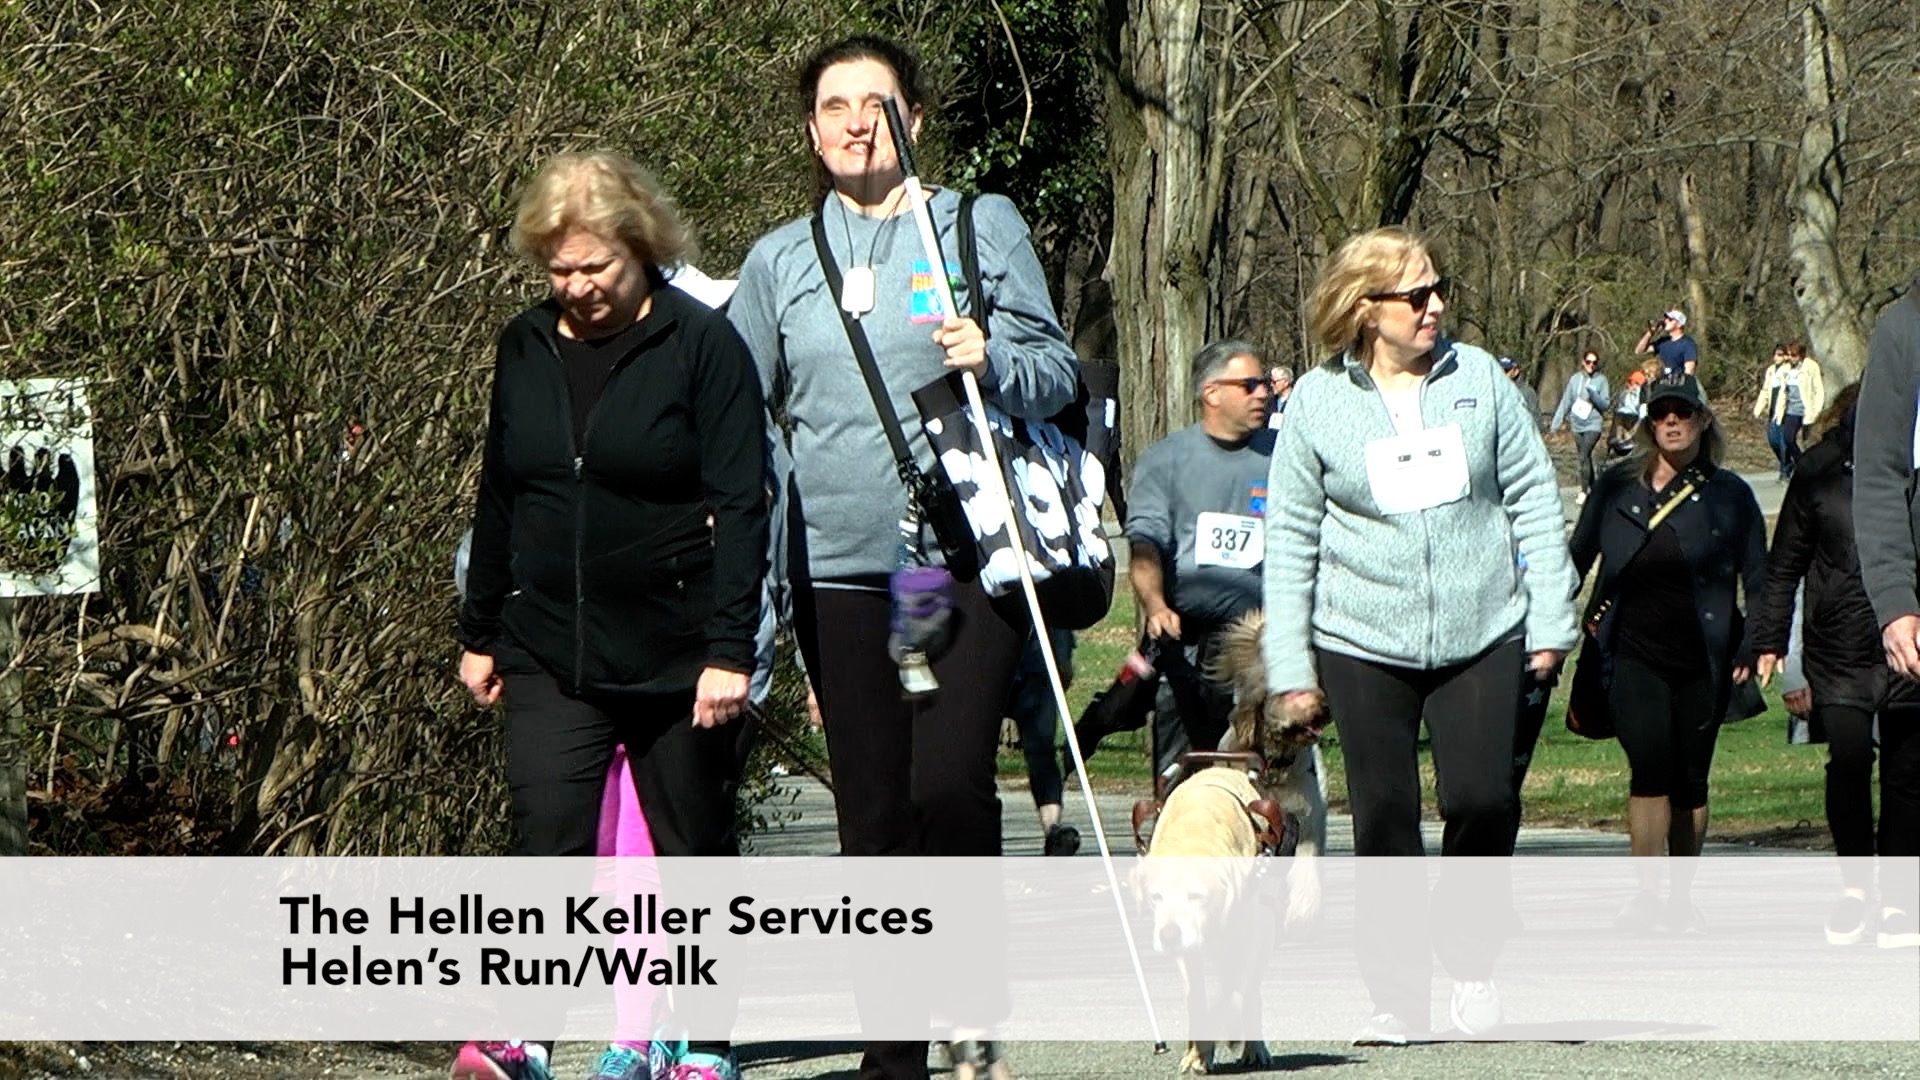 Hellen Keller Services Annual Helen's Run Walk Event